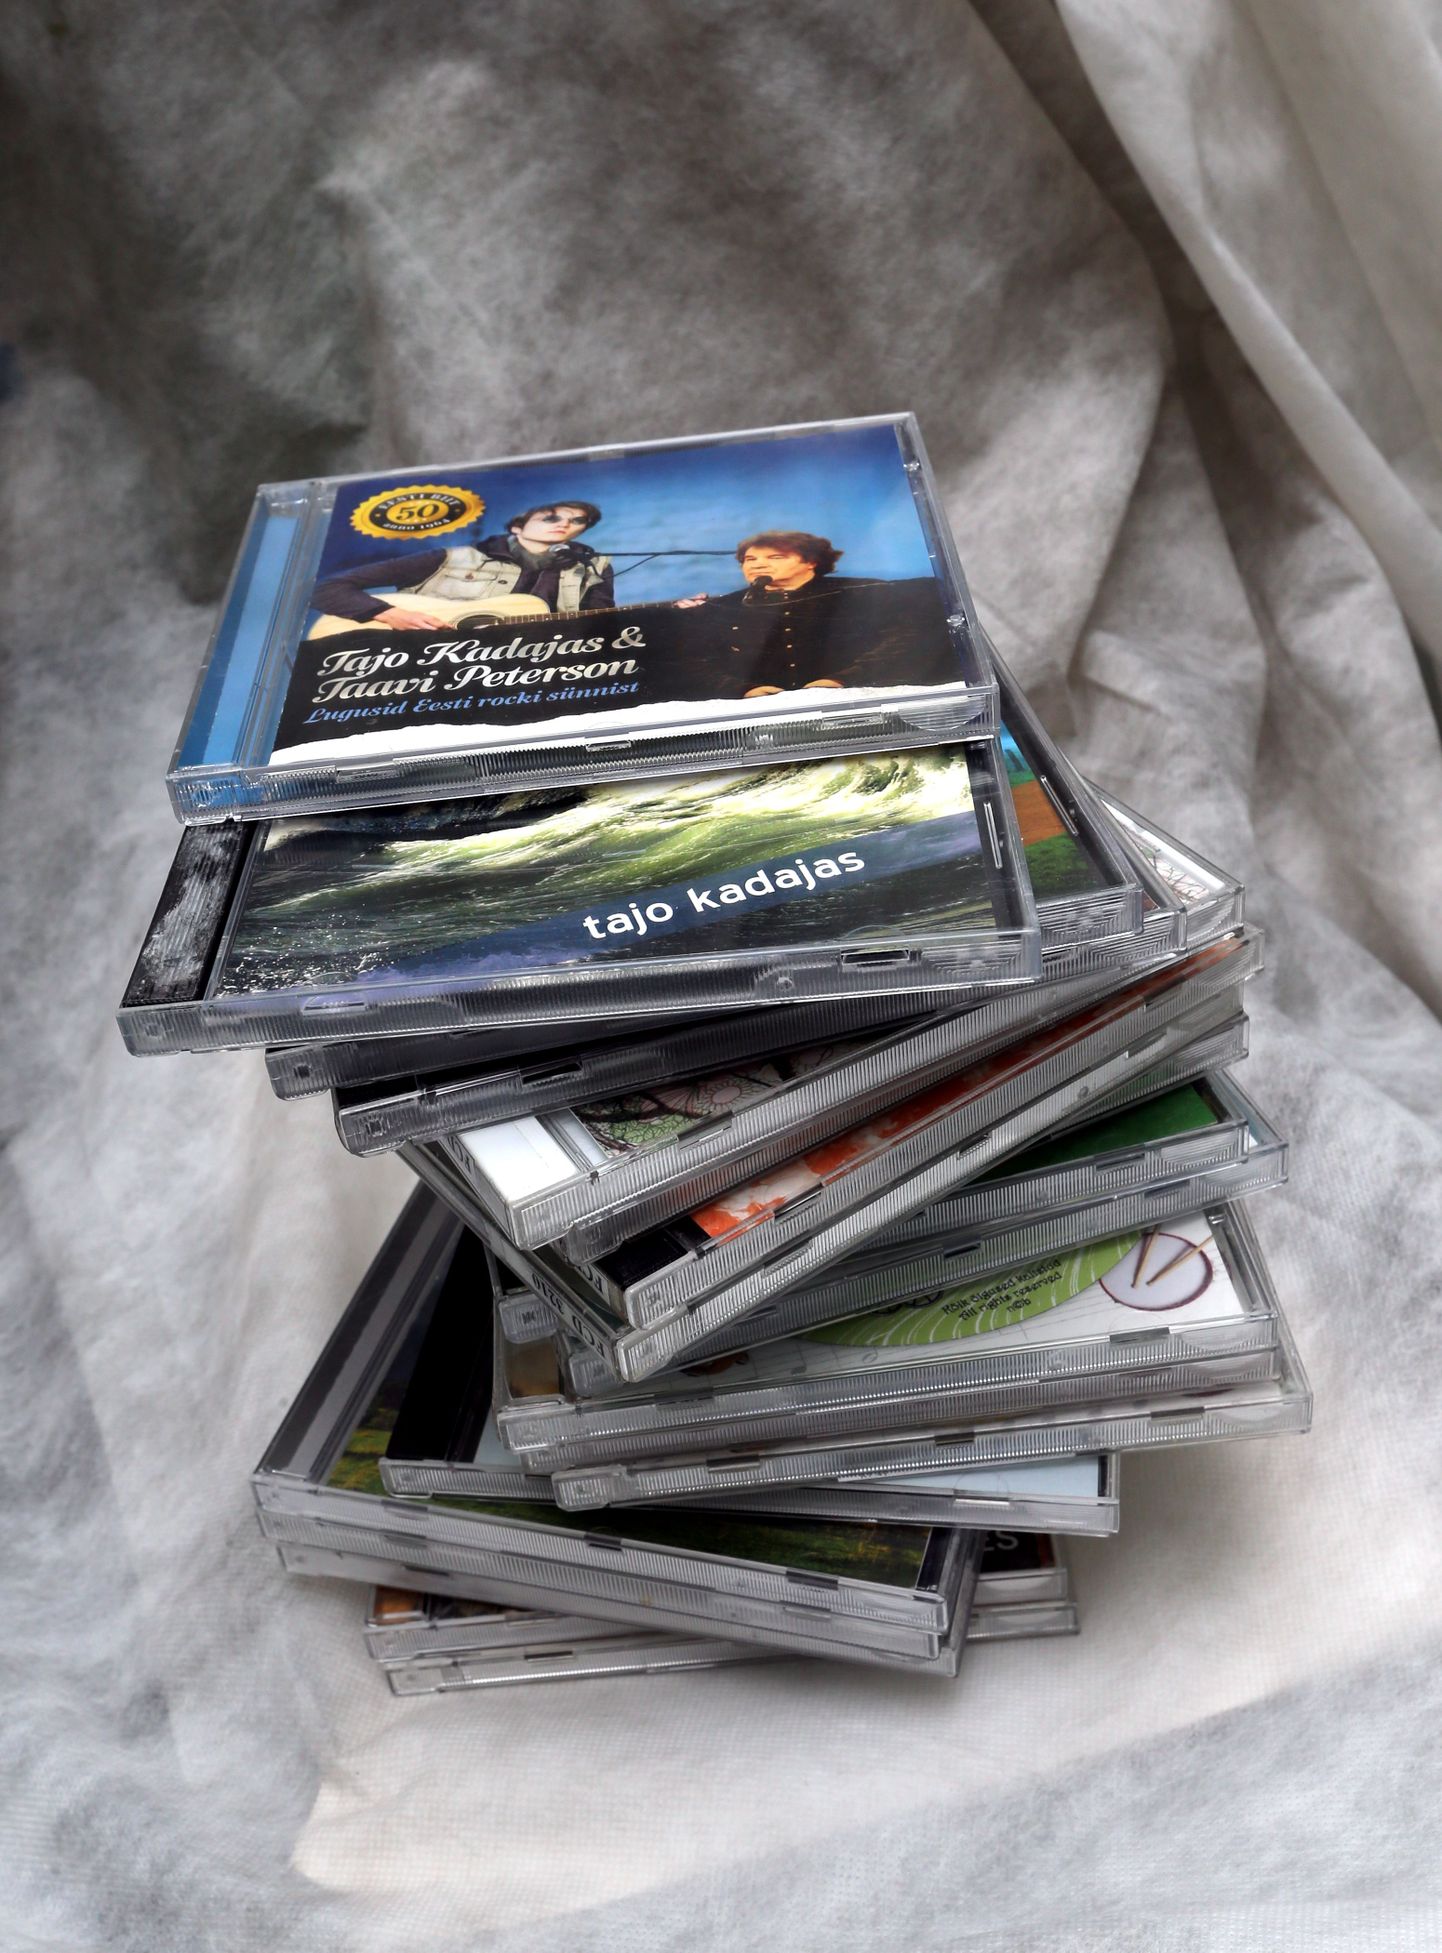 Tajo Kadajase lauldud ja loodud laulude plaatidest ning tema väljaandel ilmunud vanade lastelaulude CD-sarjast saab ehitada pisikese torni.